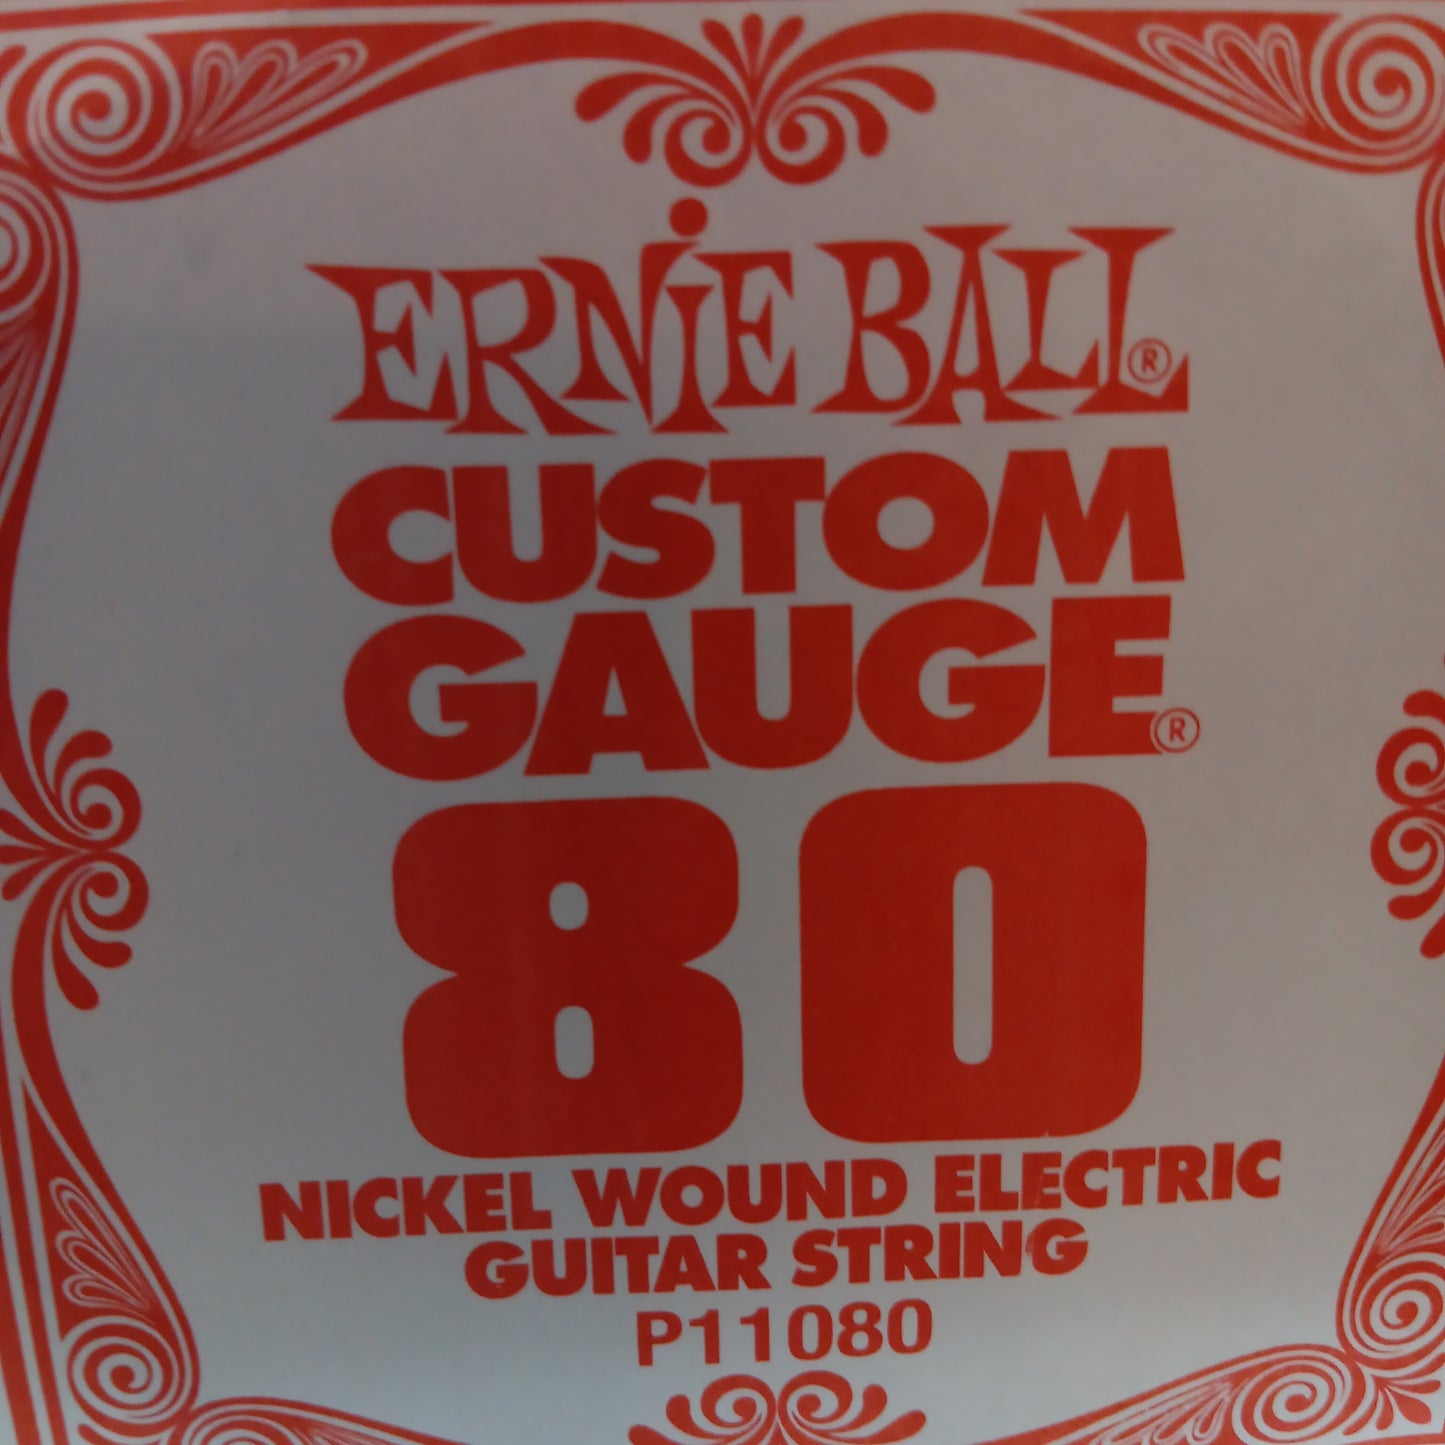 Ernie Ball Custom Gauge Nickel Wound Single Strings P1080/80
Gauge